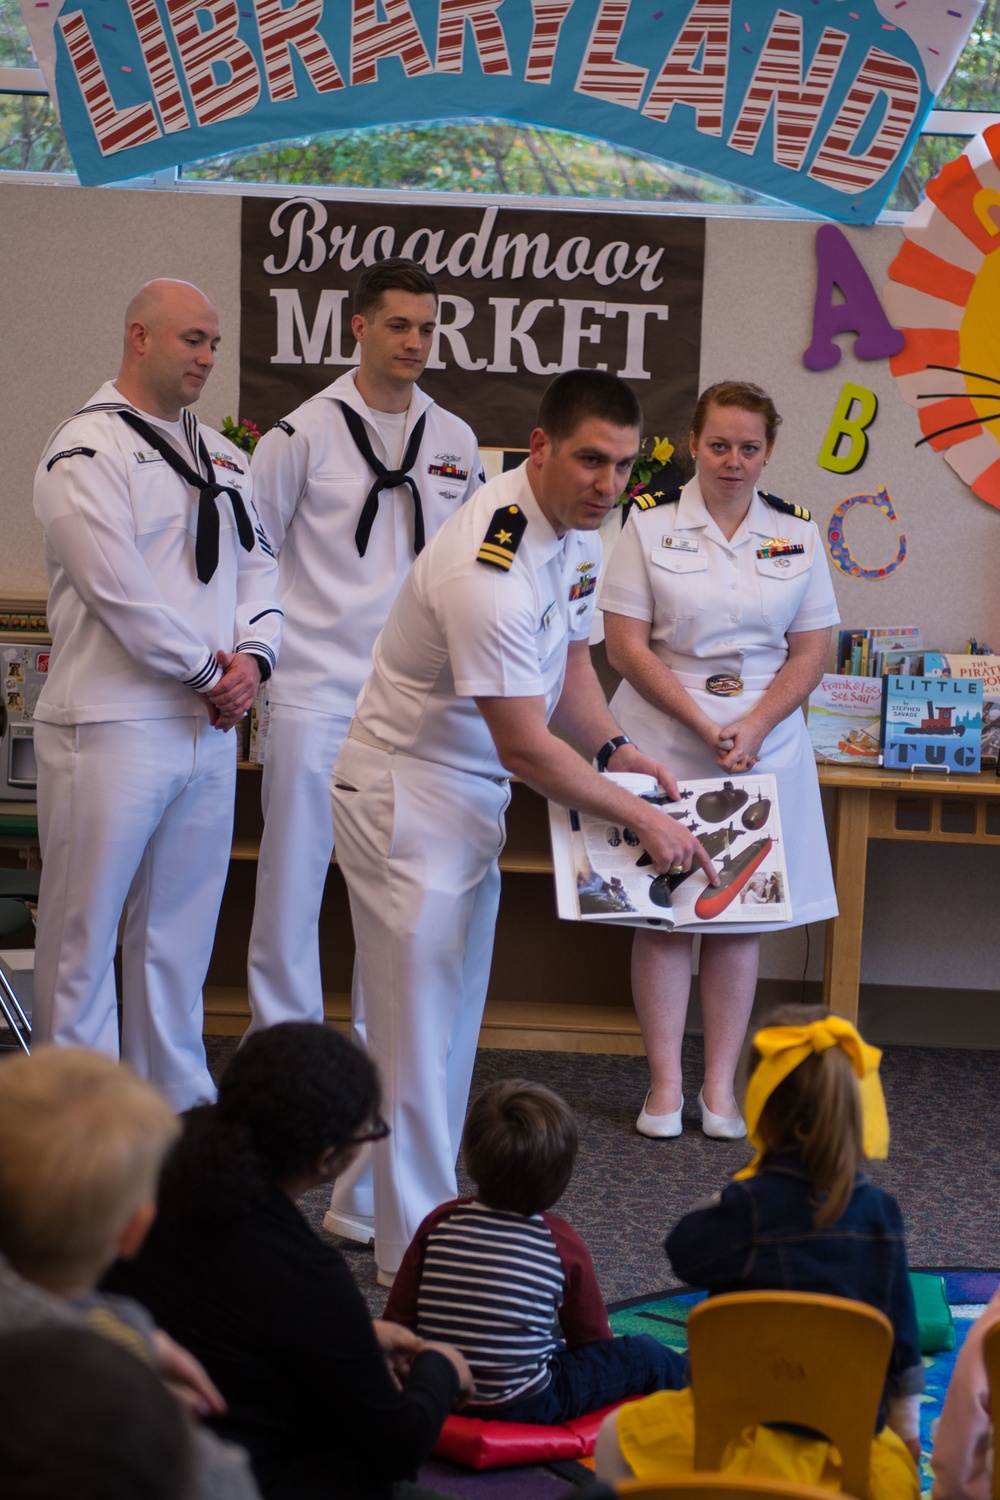 USS Louisiana Sailors Read to Children